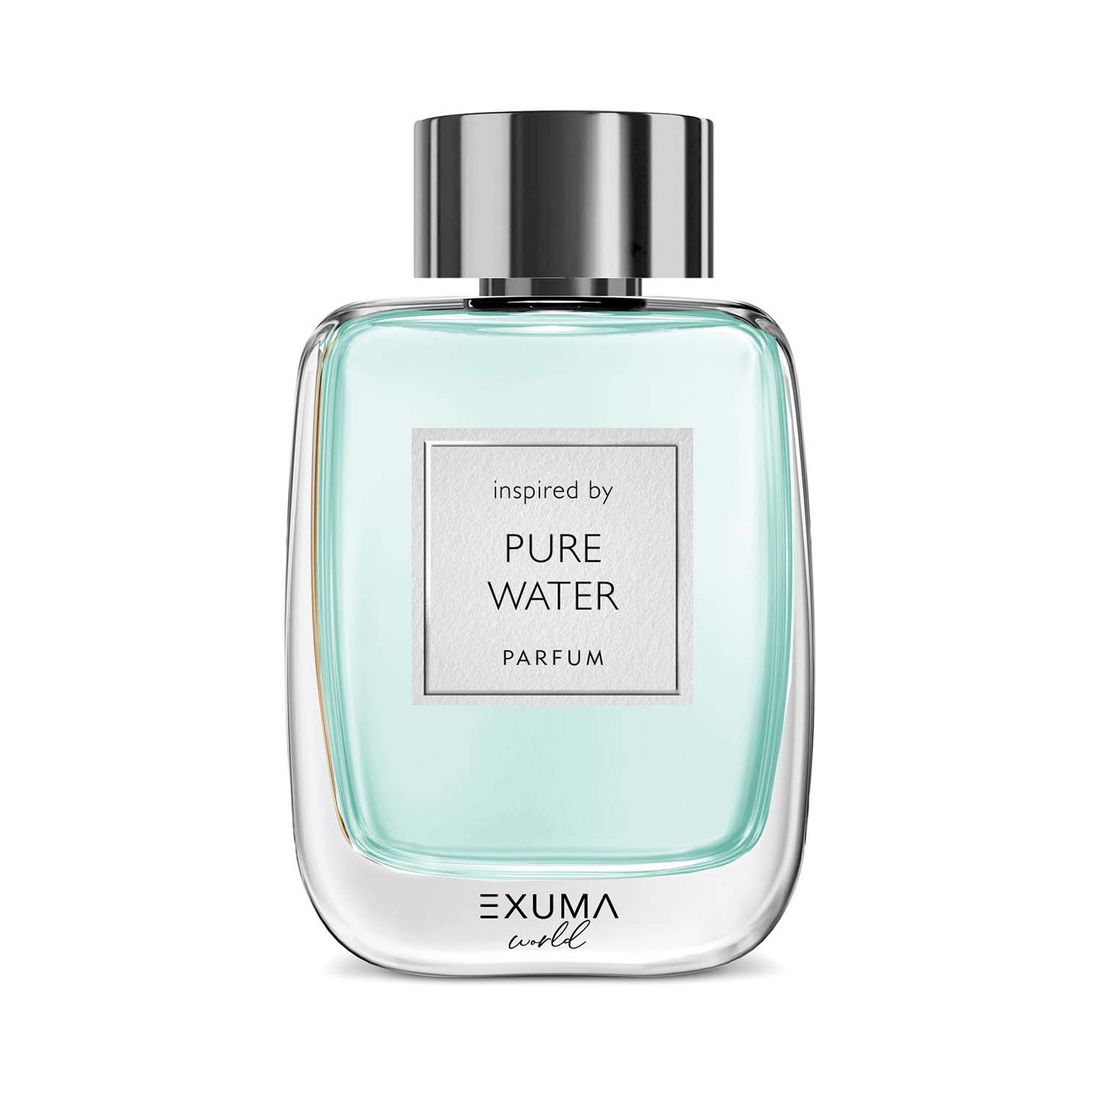 exuma pure water ekstrakt perfum 50 ml   